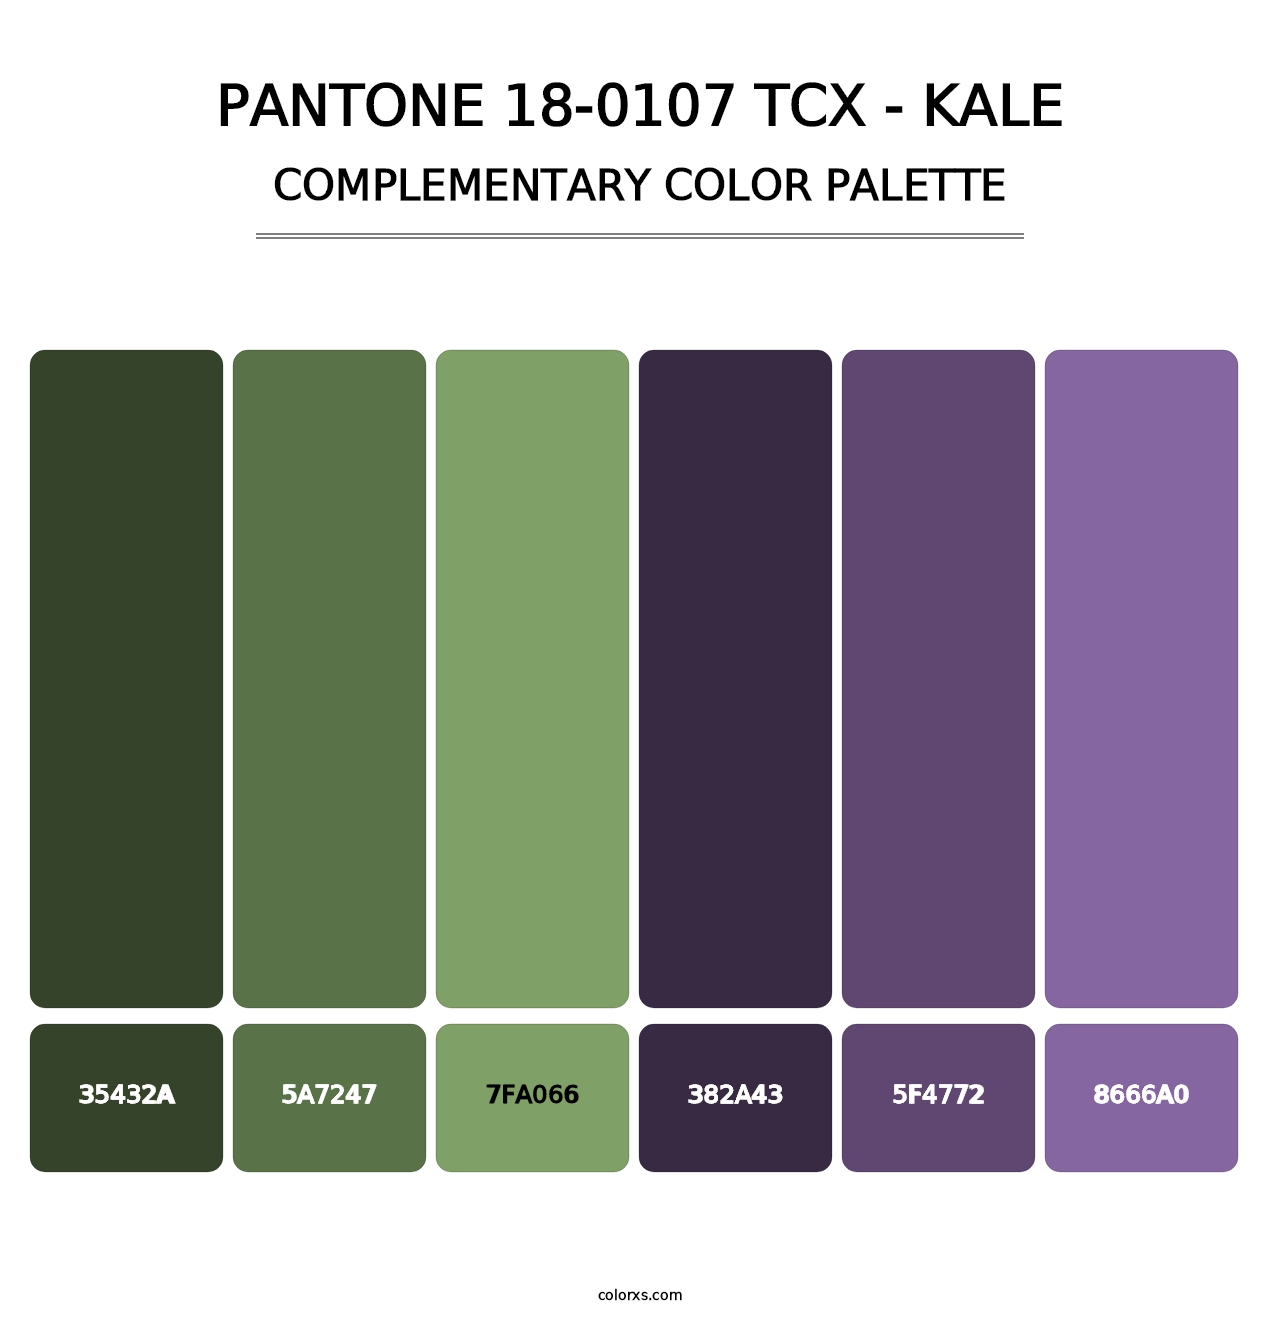 PANTONE 18-0107 TCX - Kale - Complementary Color Palette